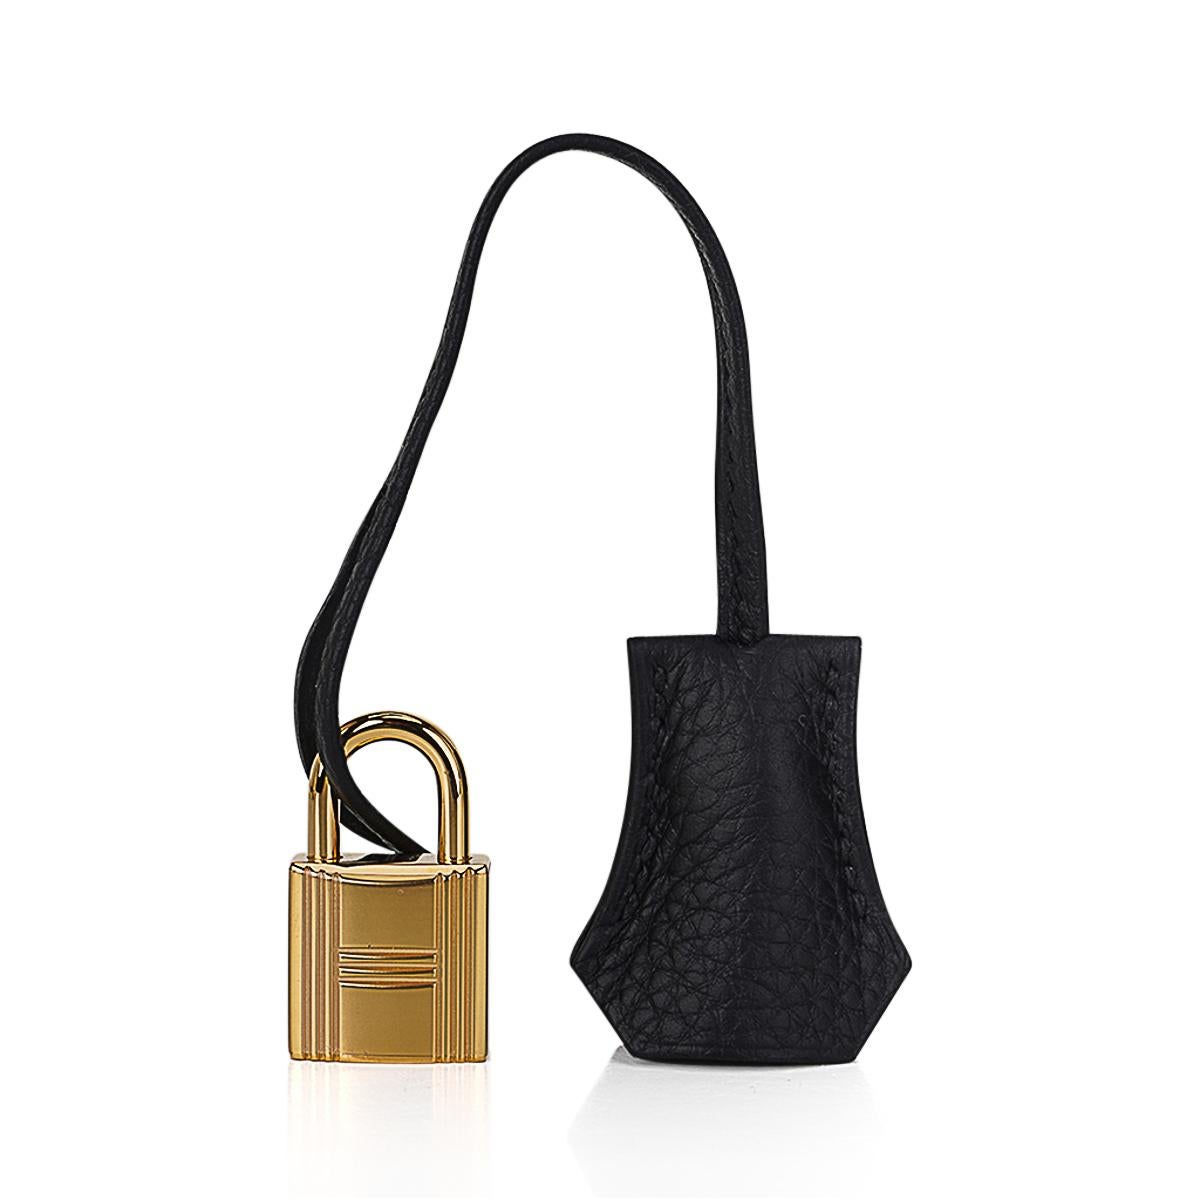 Hermes Birkin 25 Black Bag Gold Hardware Togo Leather 2